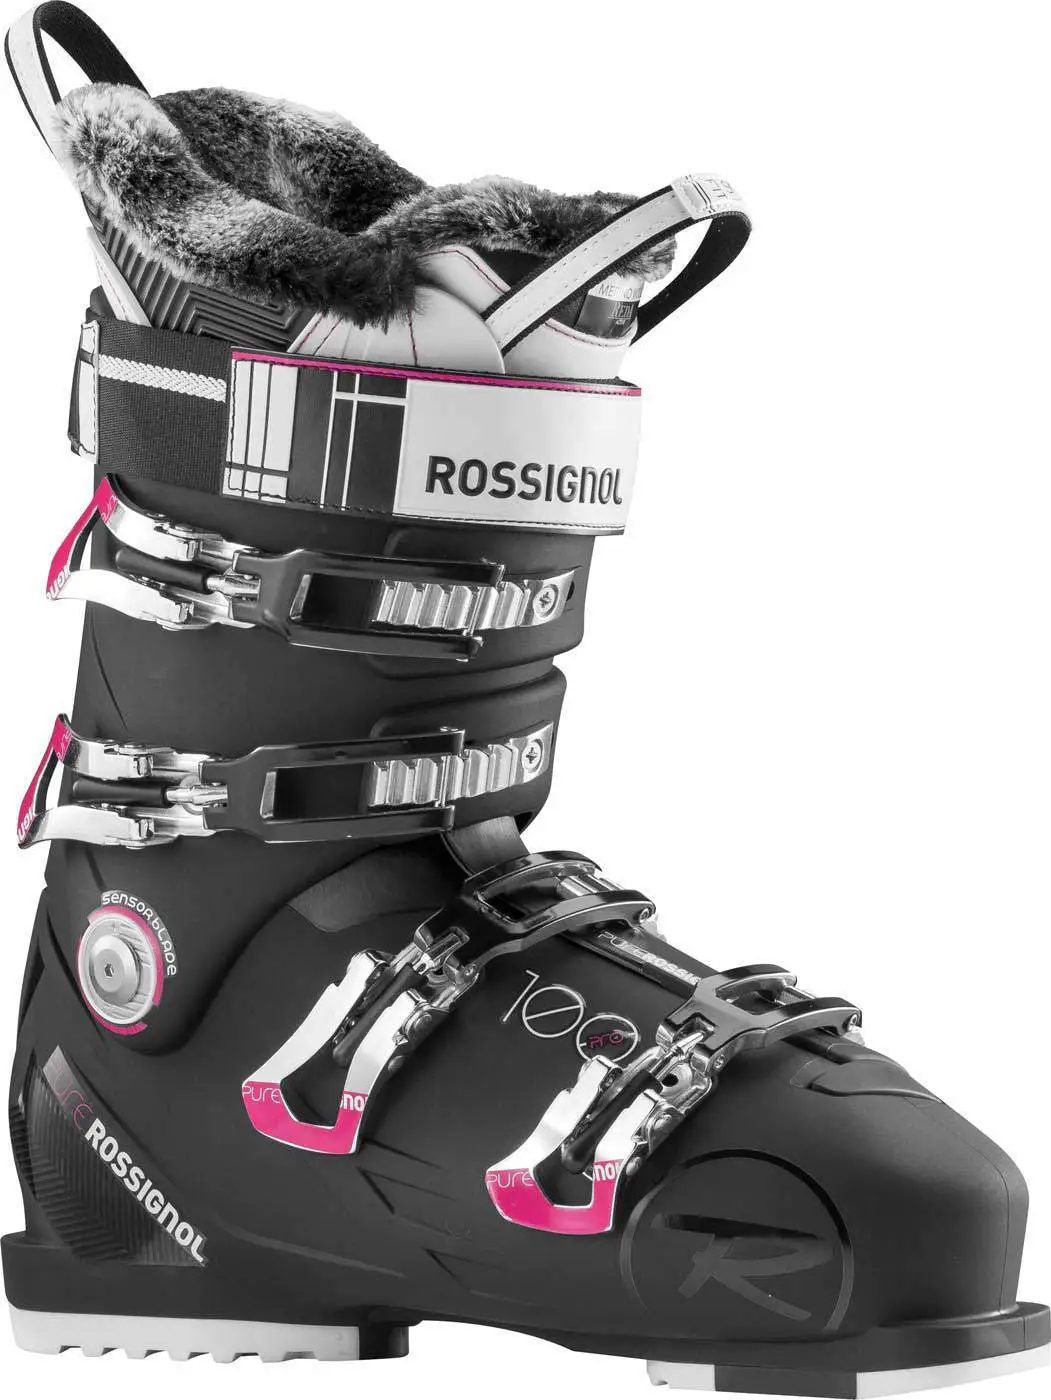 zoete smaak voor mij verkoper Rossignol Pure Pro 100+Marino skischoenen dames zwart van skischoenen